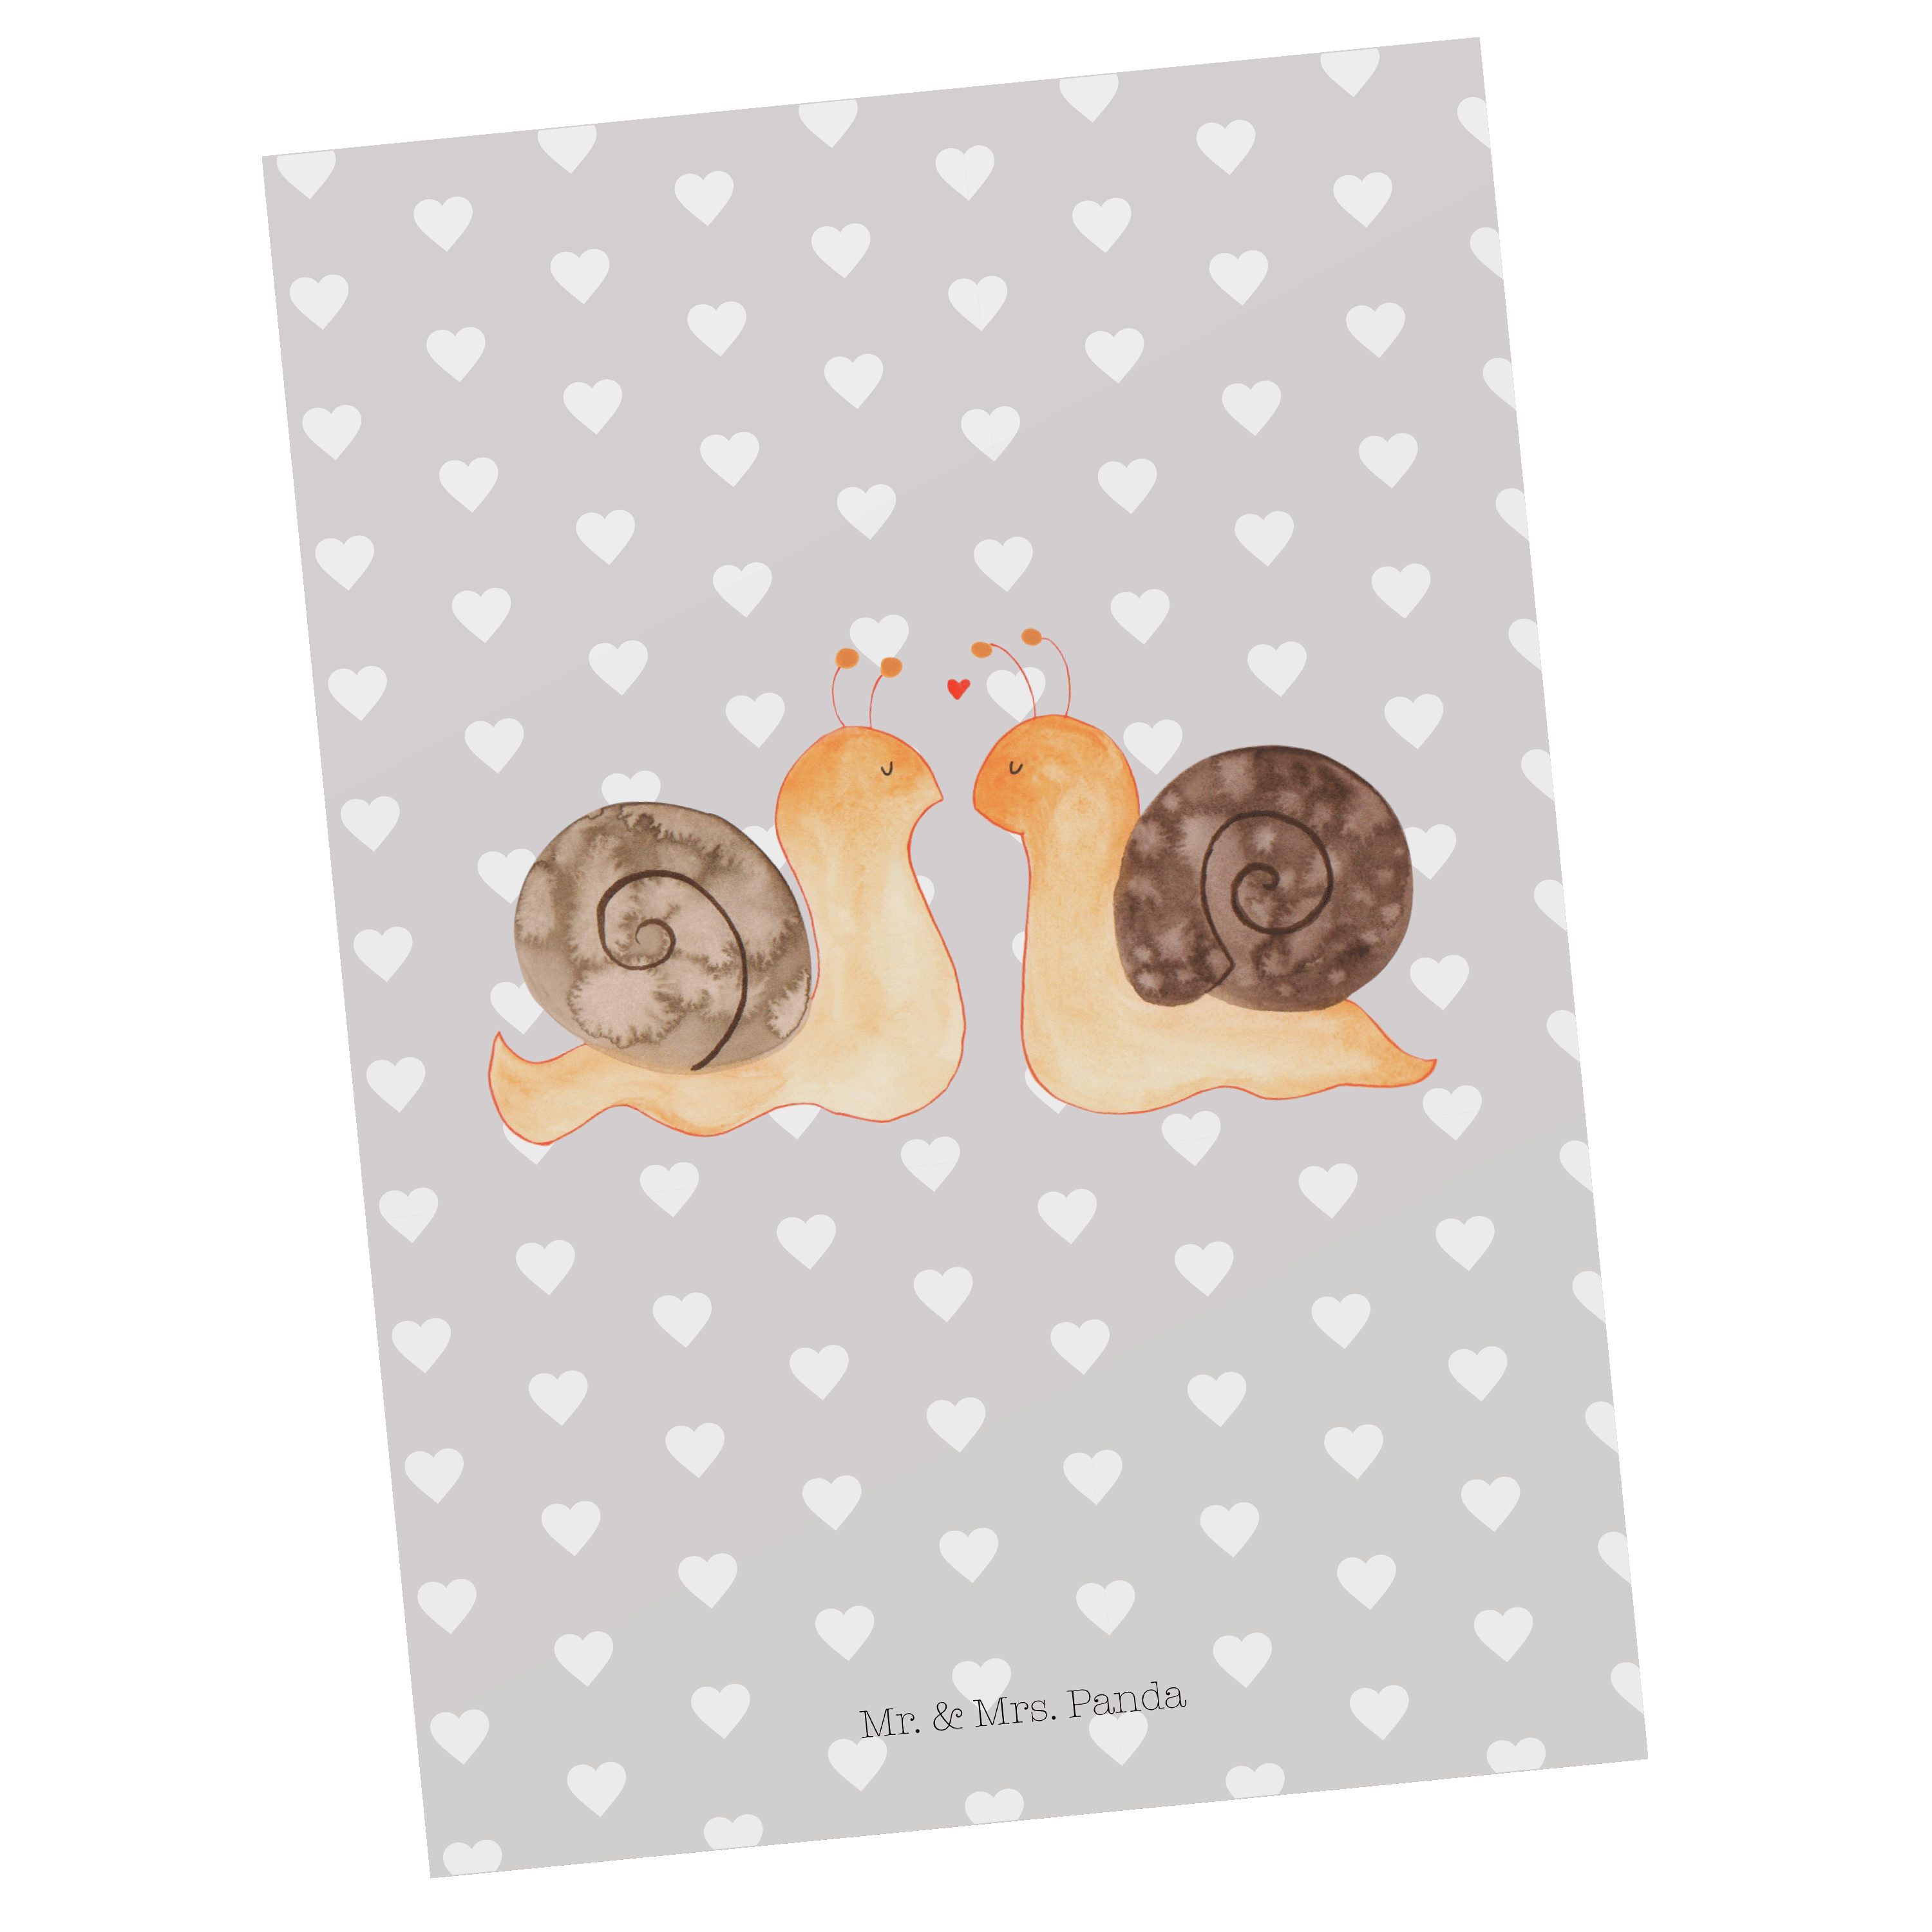 Mr. & Mrs. Panda Postkarte Schnecken Liebe - Grau Pastell - Geschenk, Einladung, verliebt, Karte